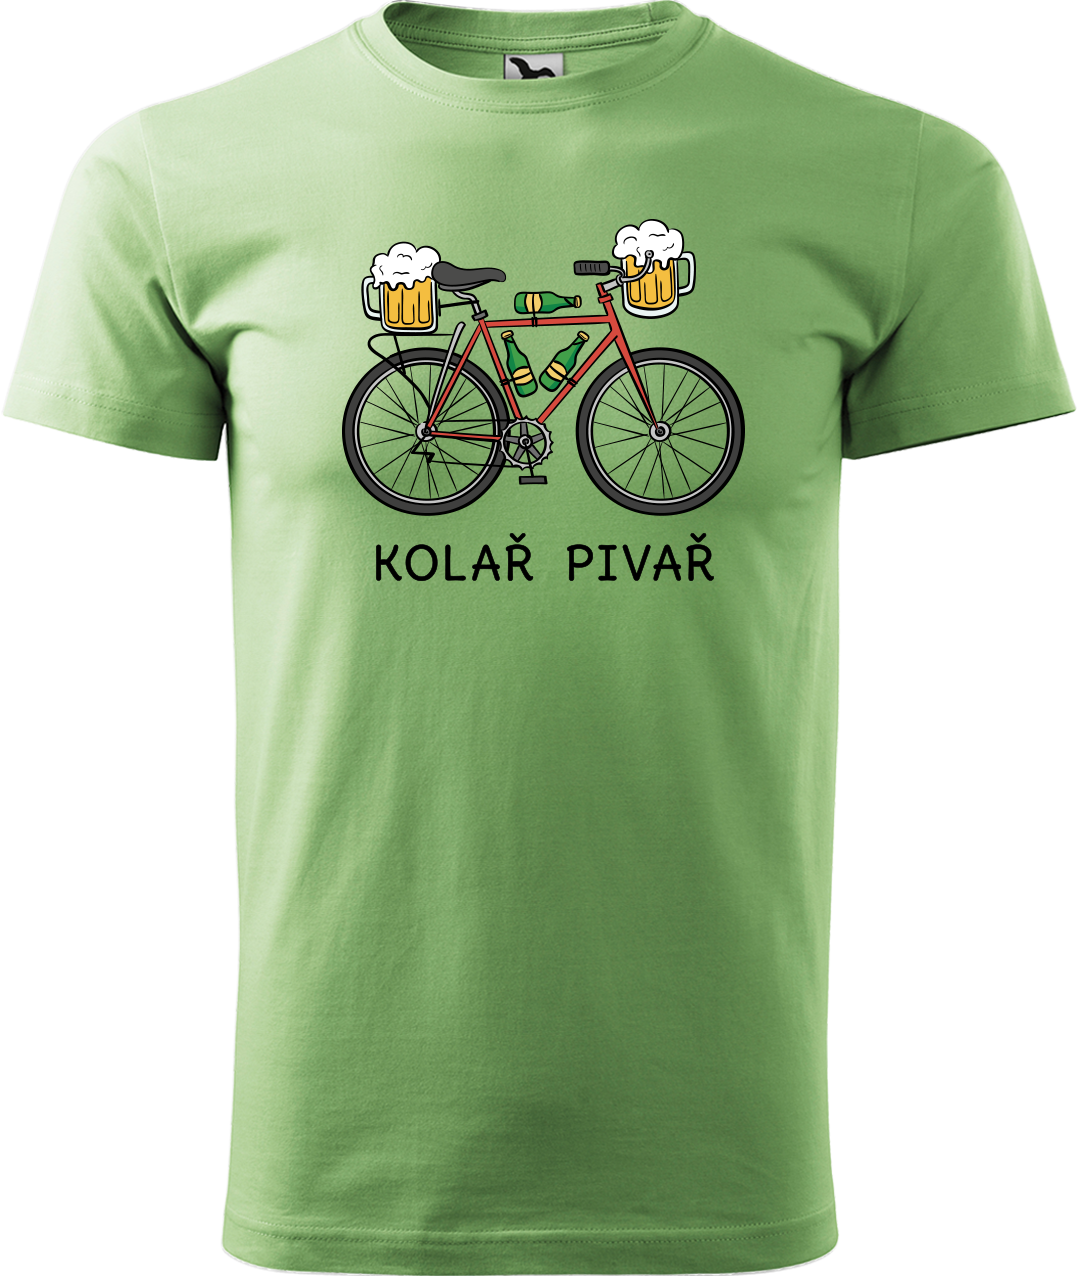 Pánské tričko s kolem - Kolař pivař Velikost: M, Barva: Trávově zelená (39)